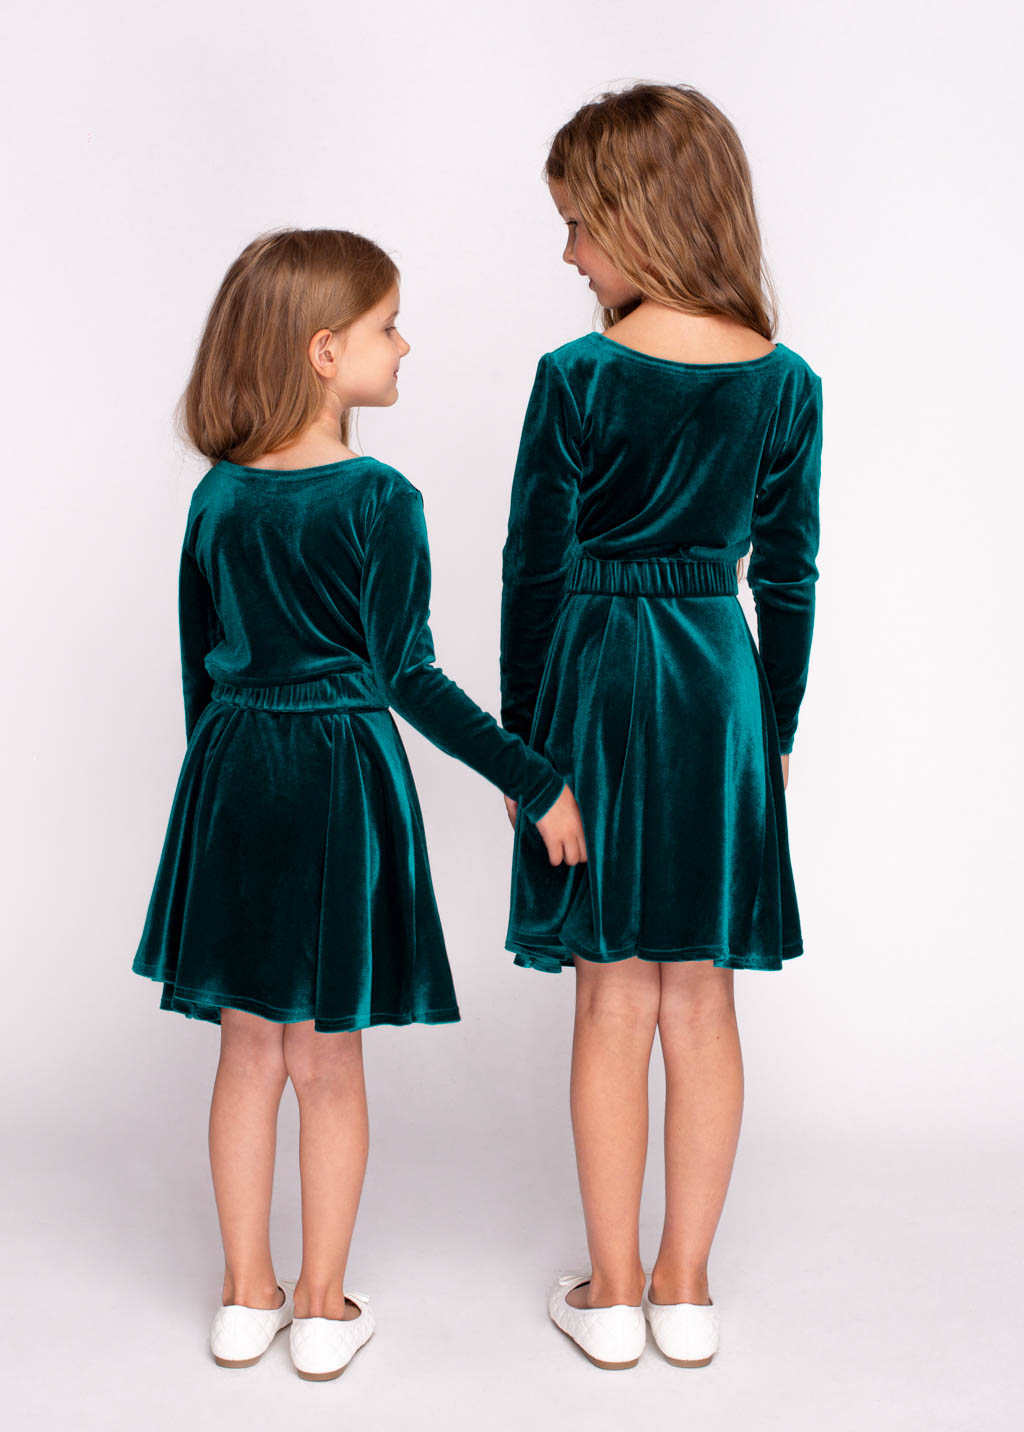 Mommy and me teal green velvet dresses